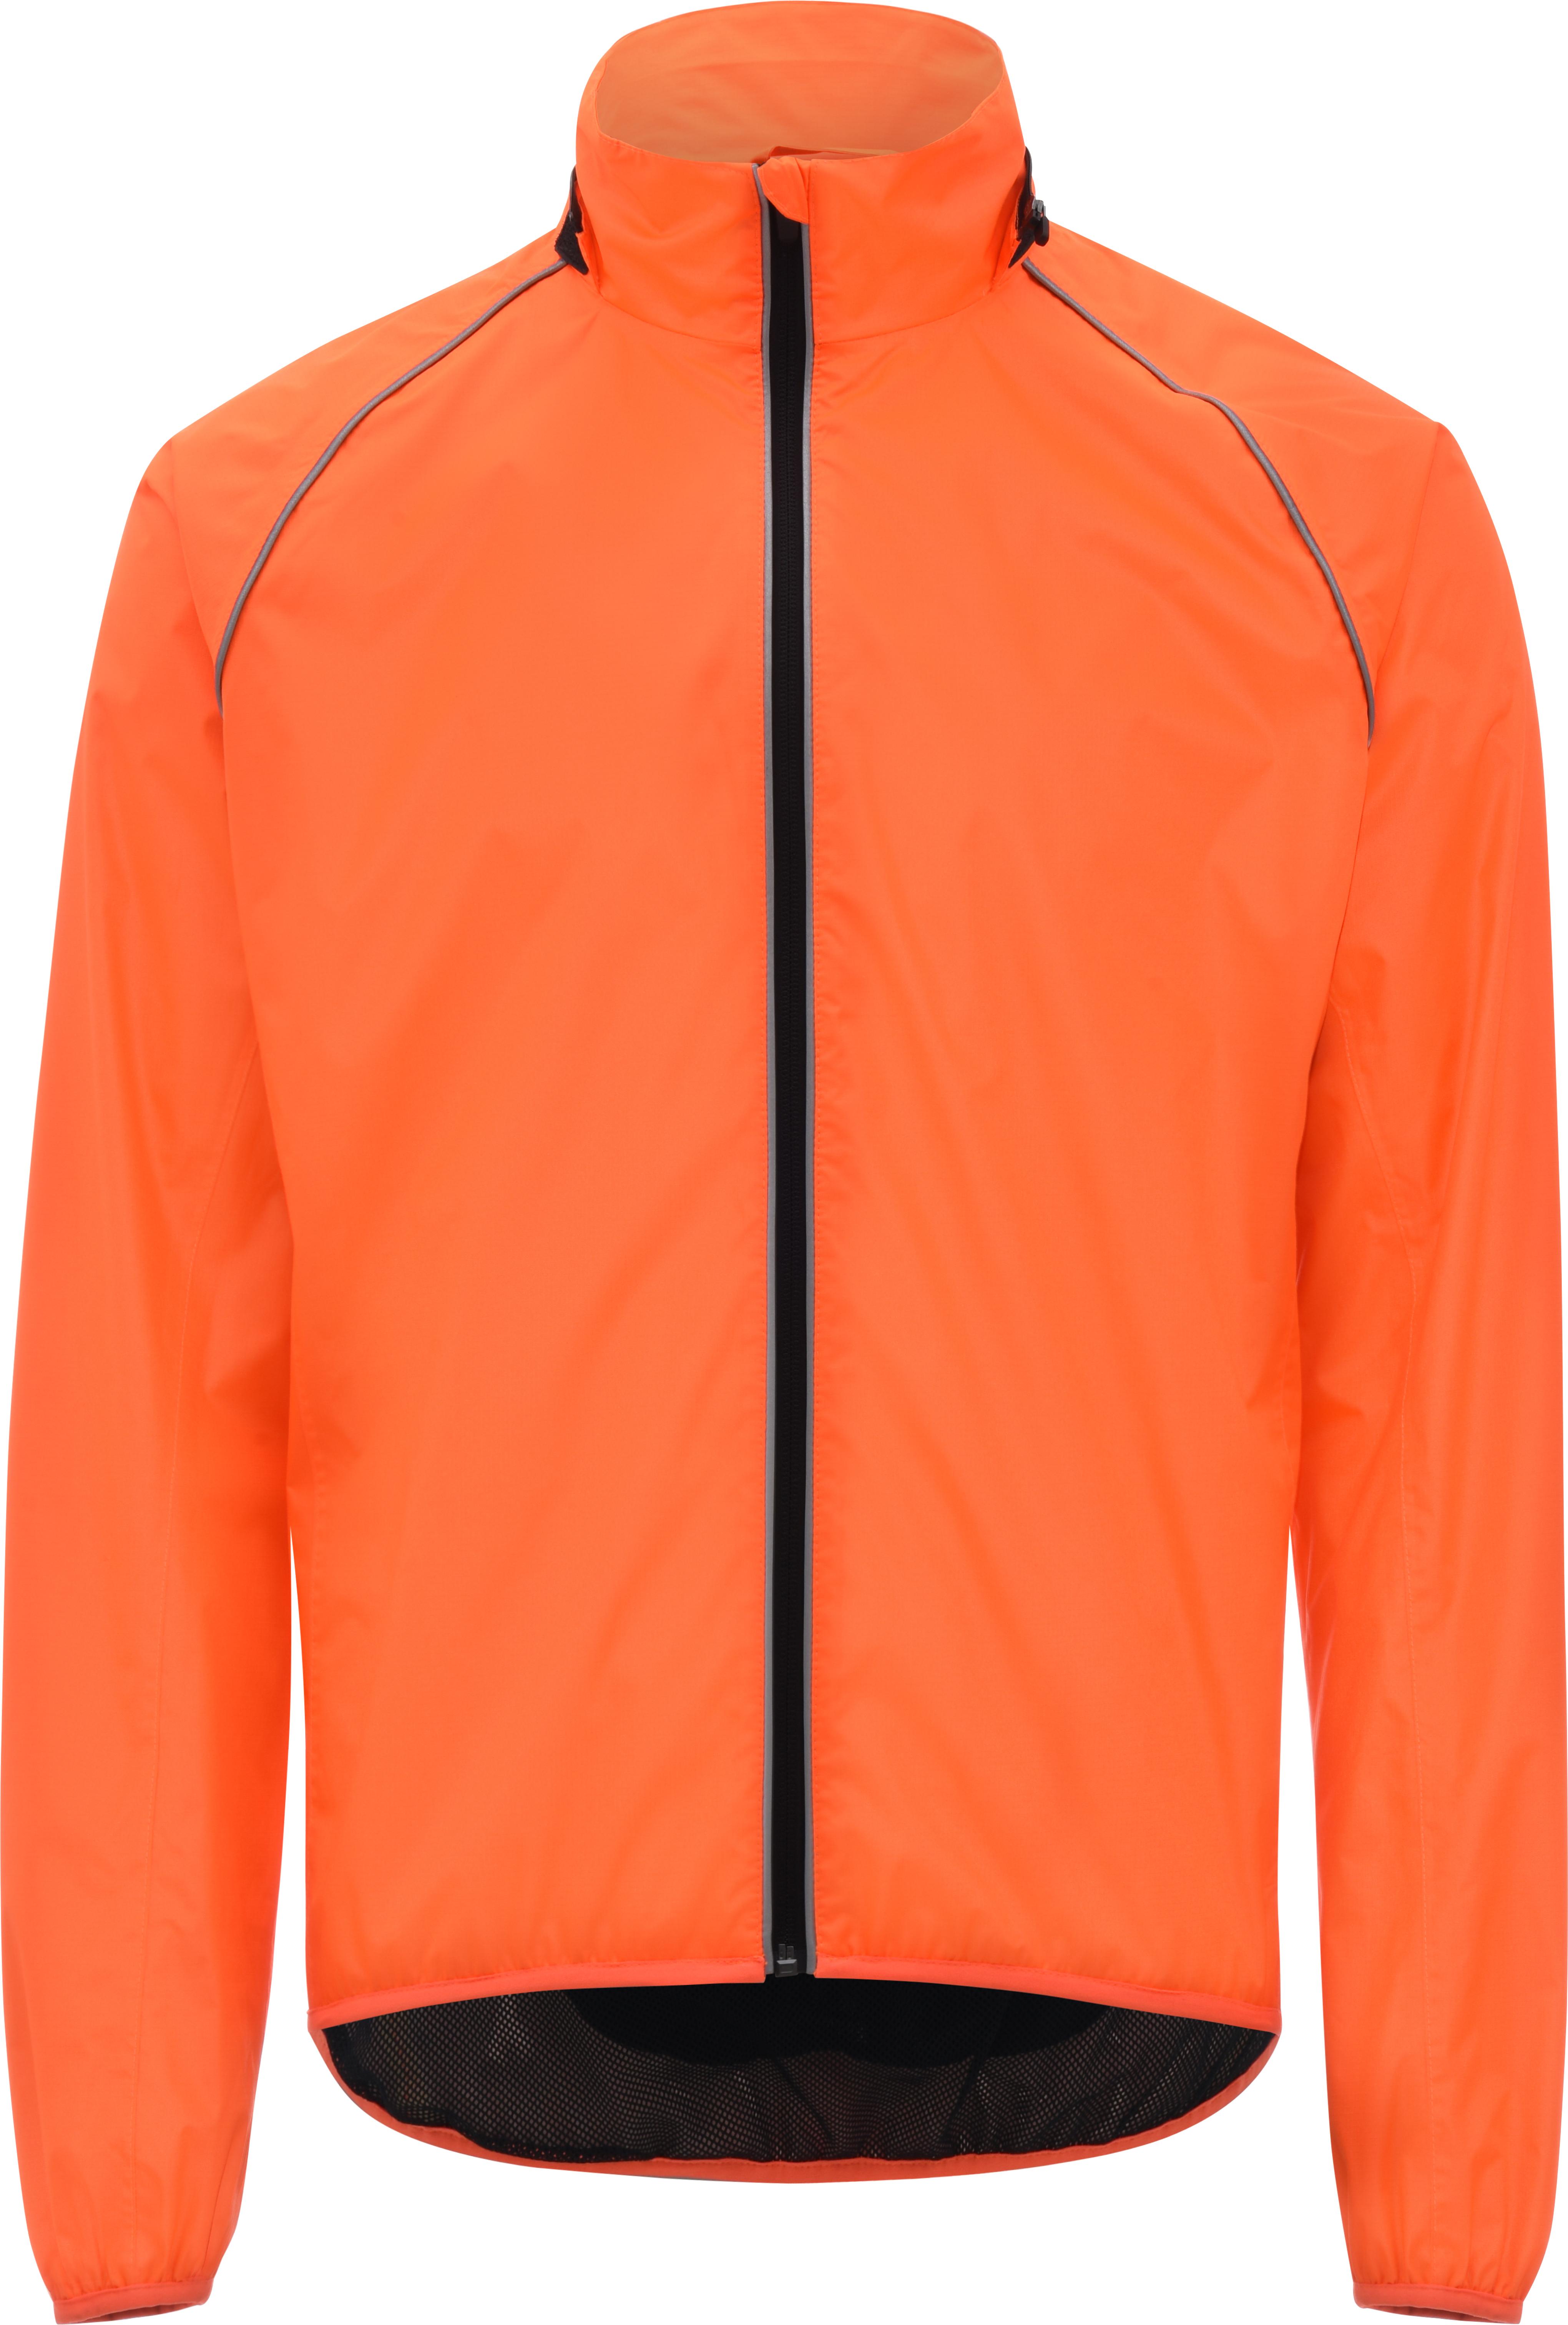 orange bike jacket